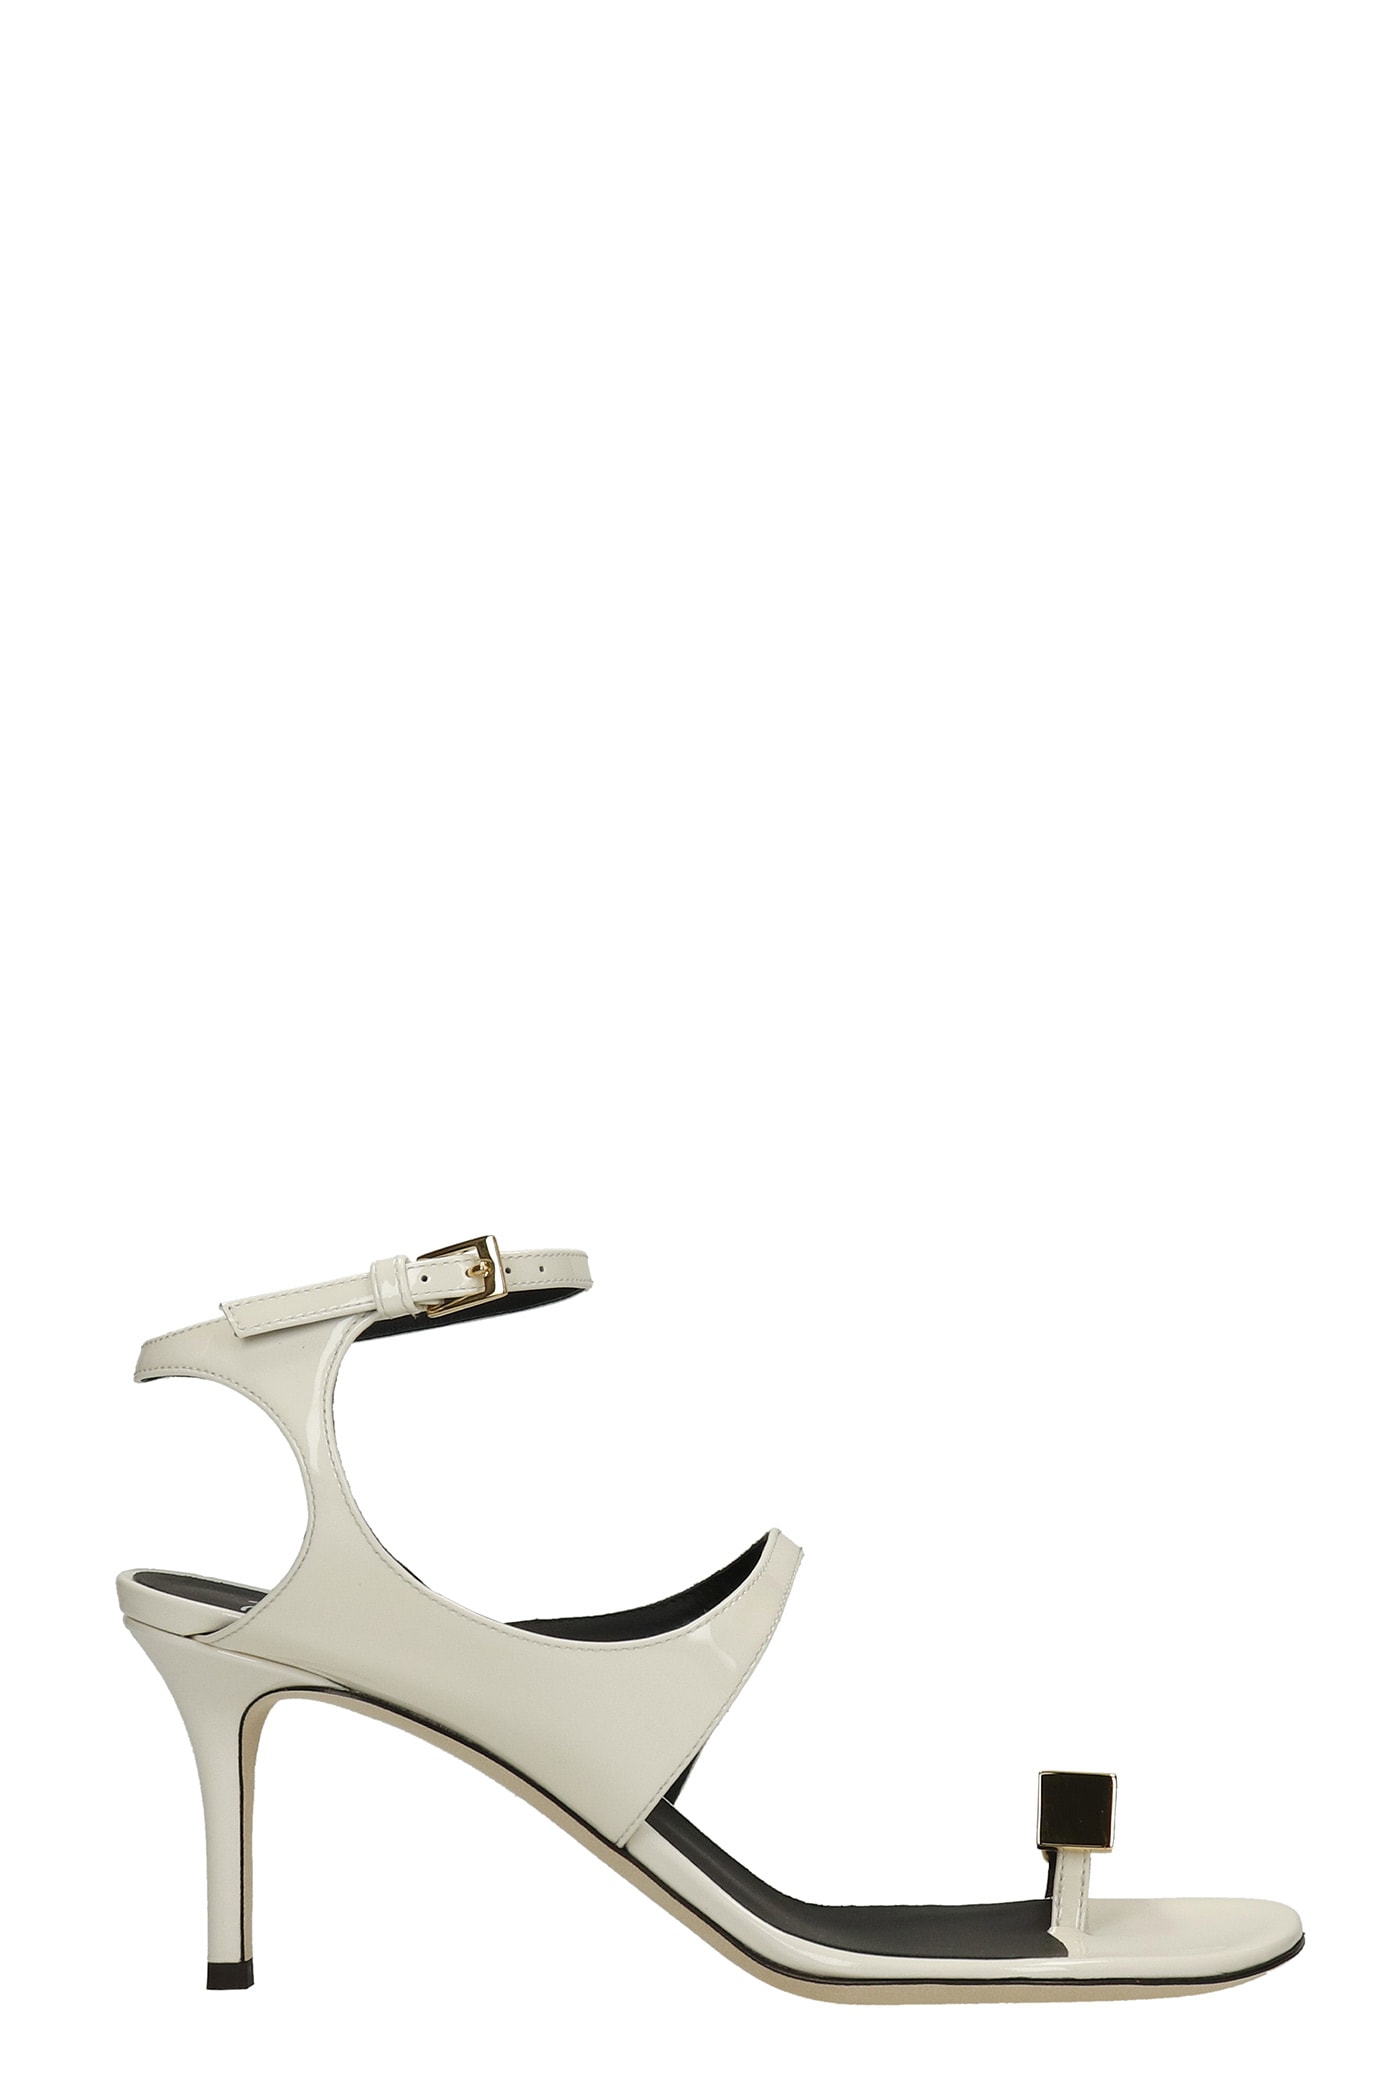 Giuseppe Zanotti Giubecca Sandals In White Patent Leather